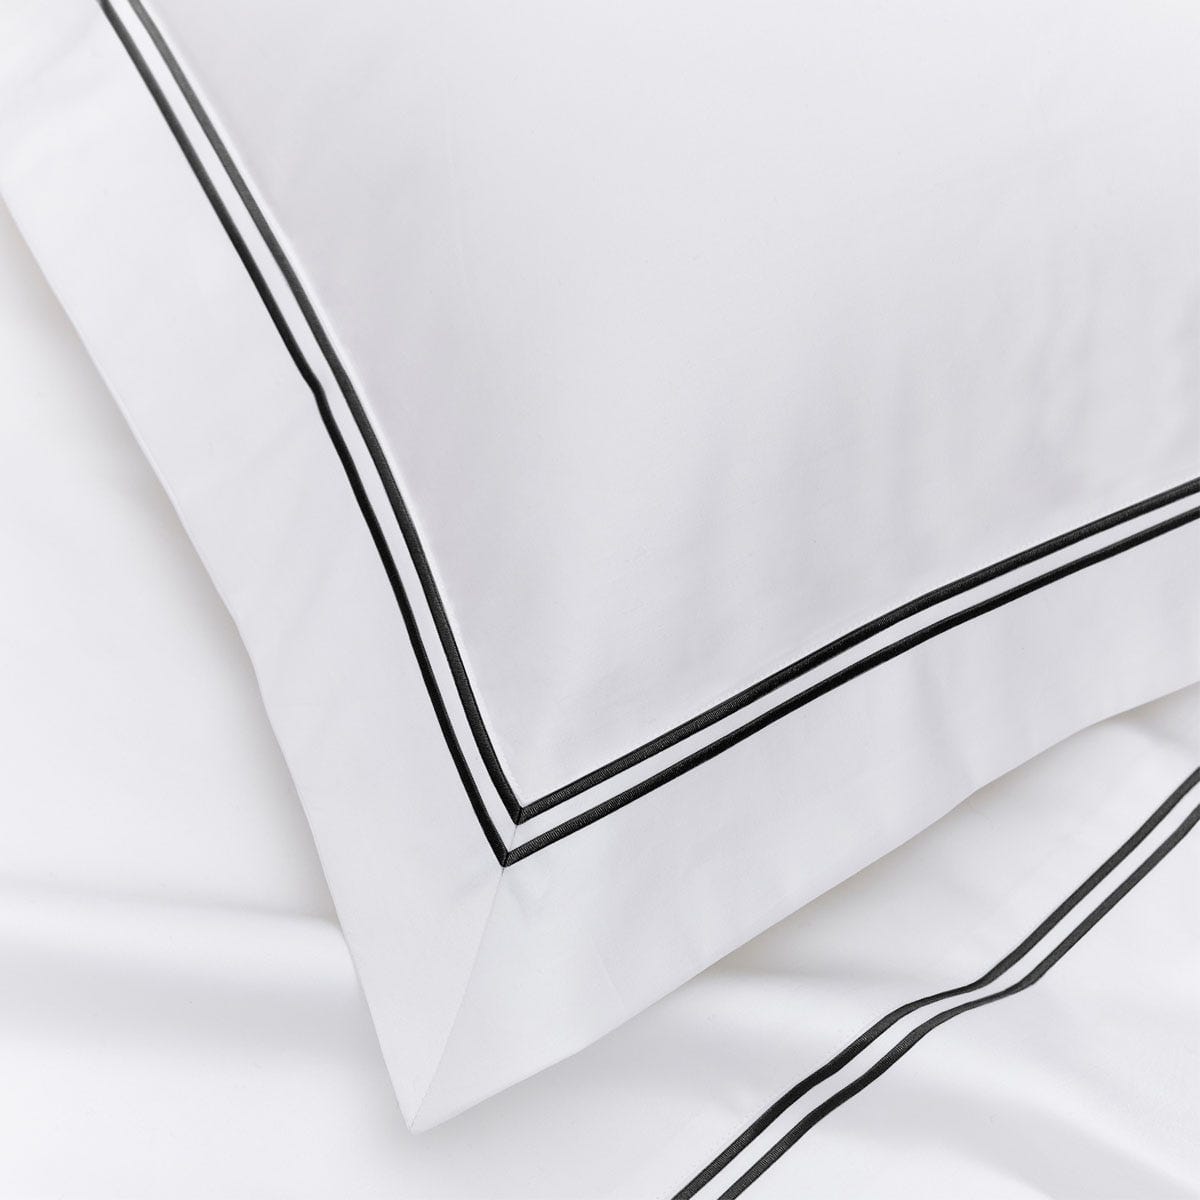 Pair of Kensington Oxford Pillowcases - 800 TC - Egyptian Cotton - White/Black - DUSK